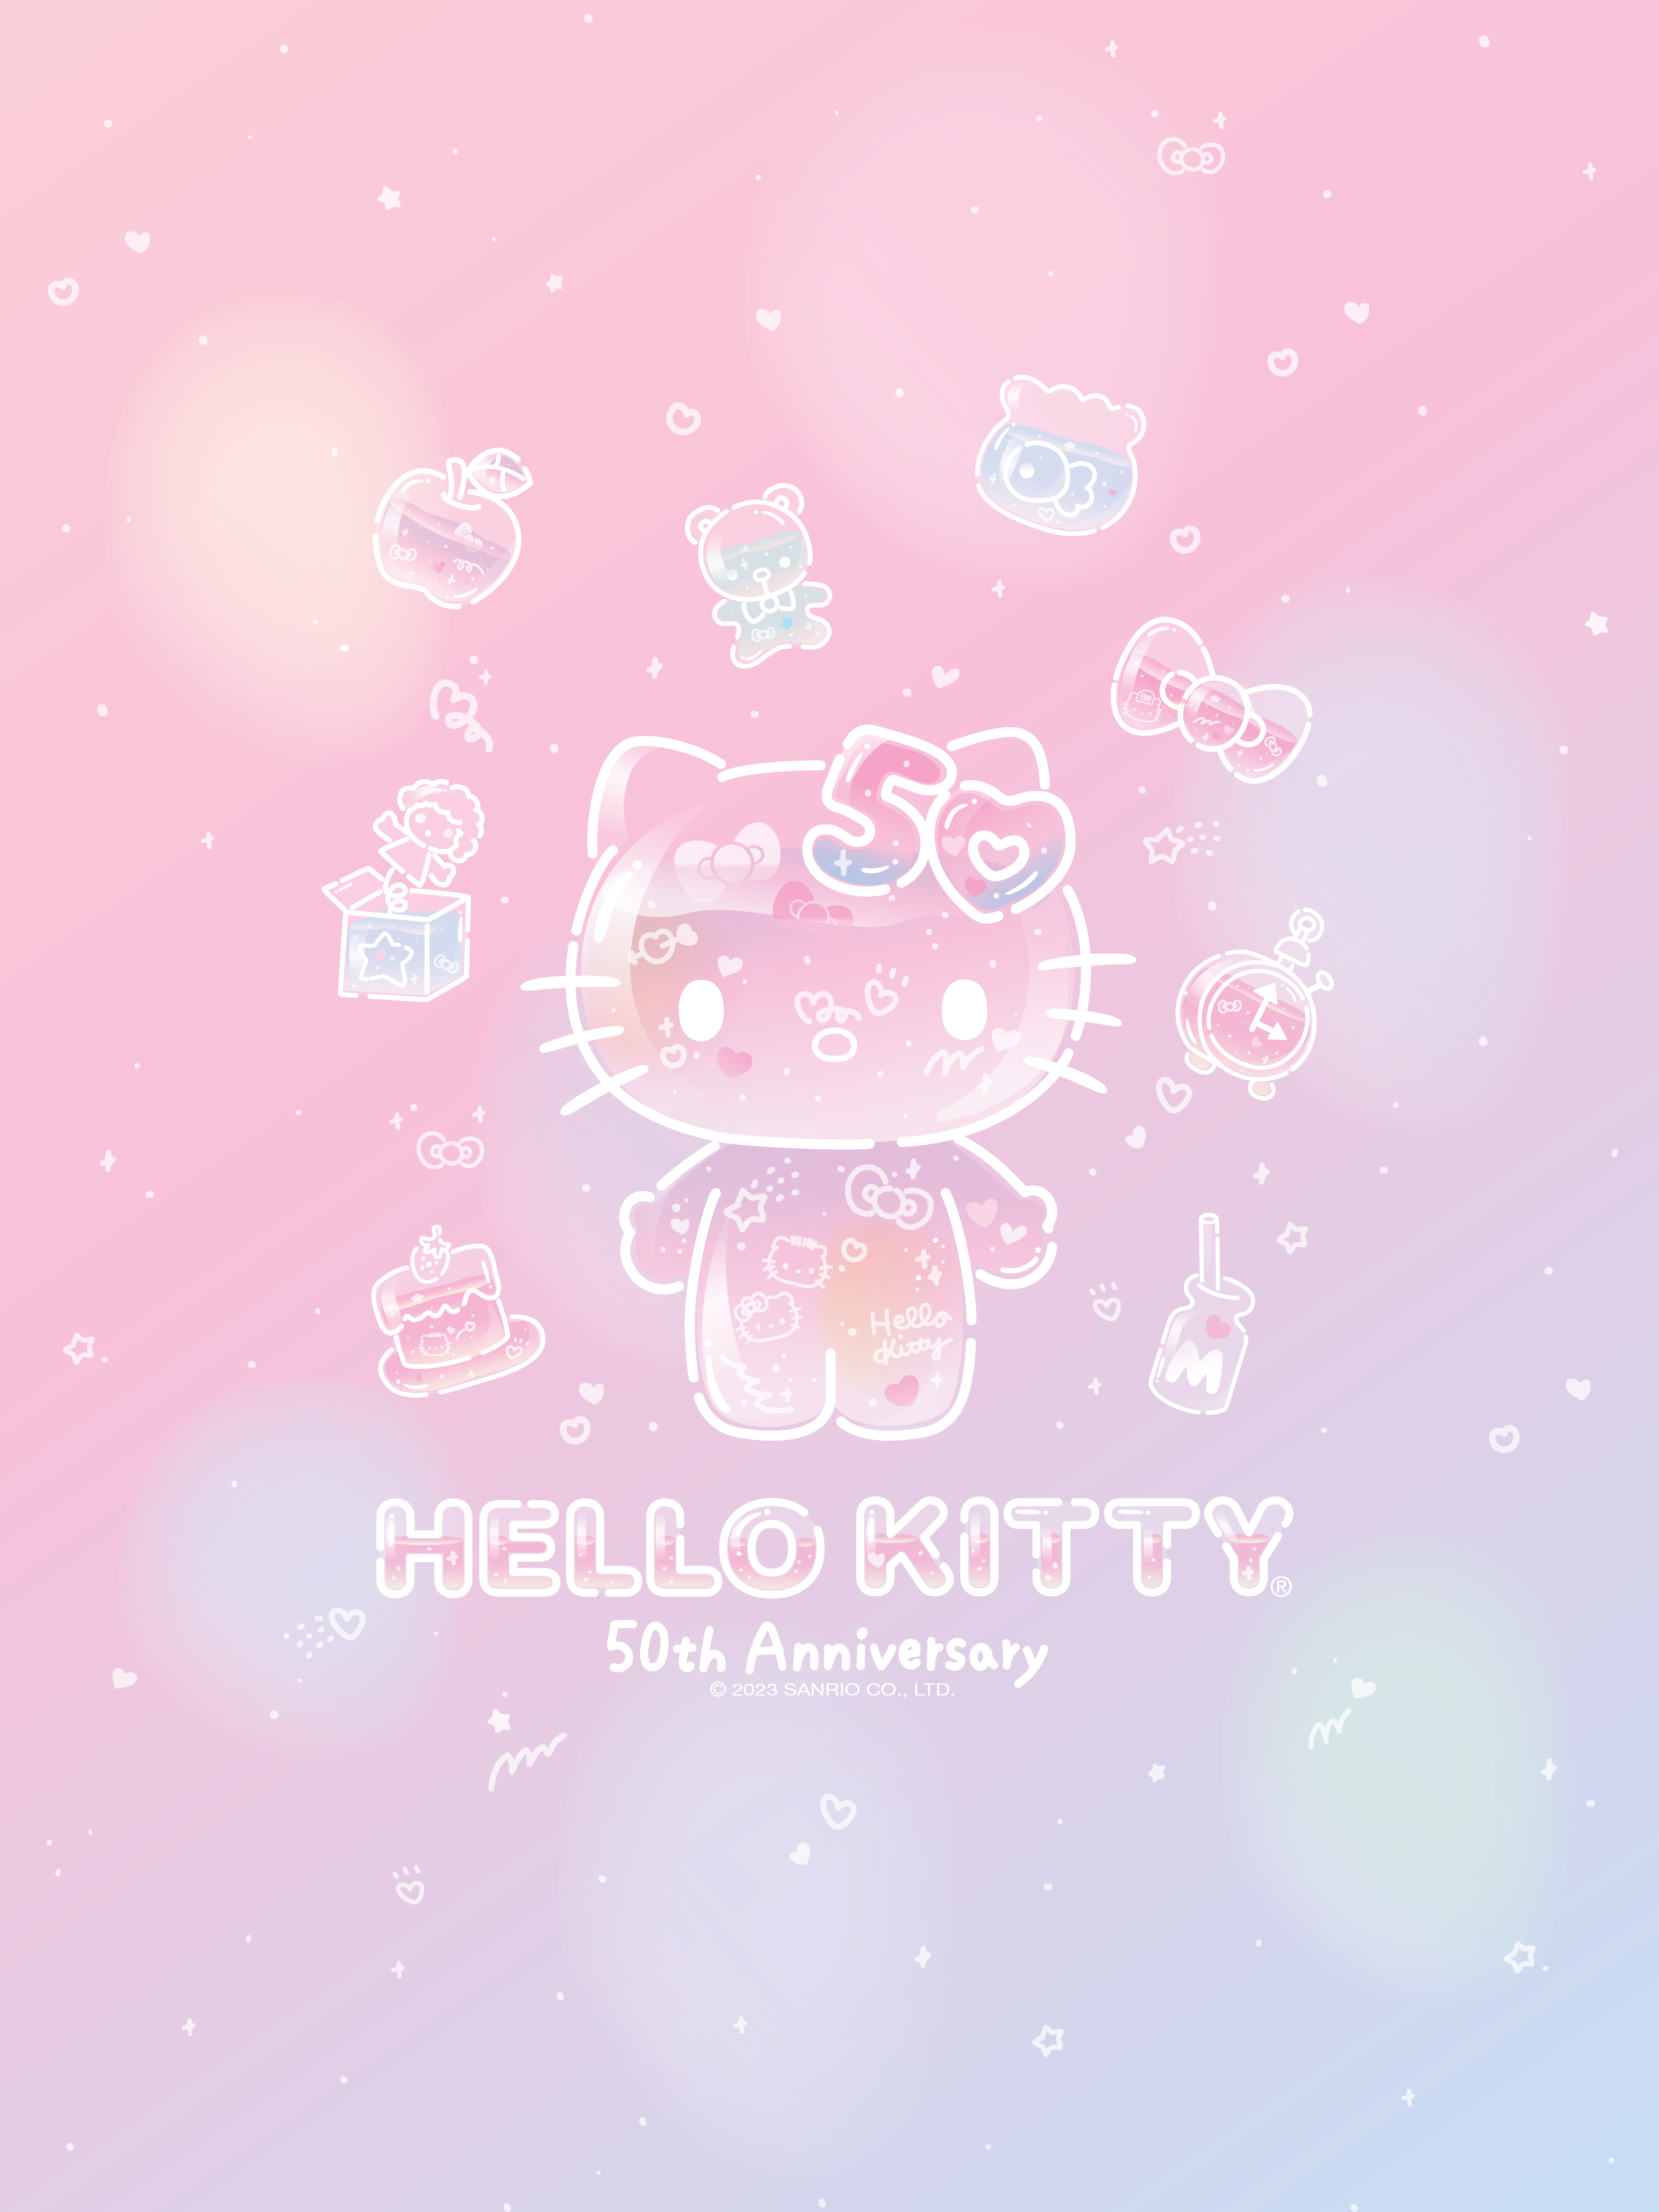 100+] Hello Kitty Aesthetic Backgrounds